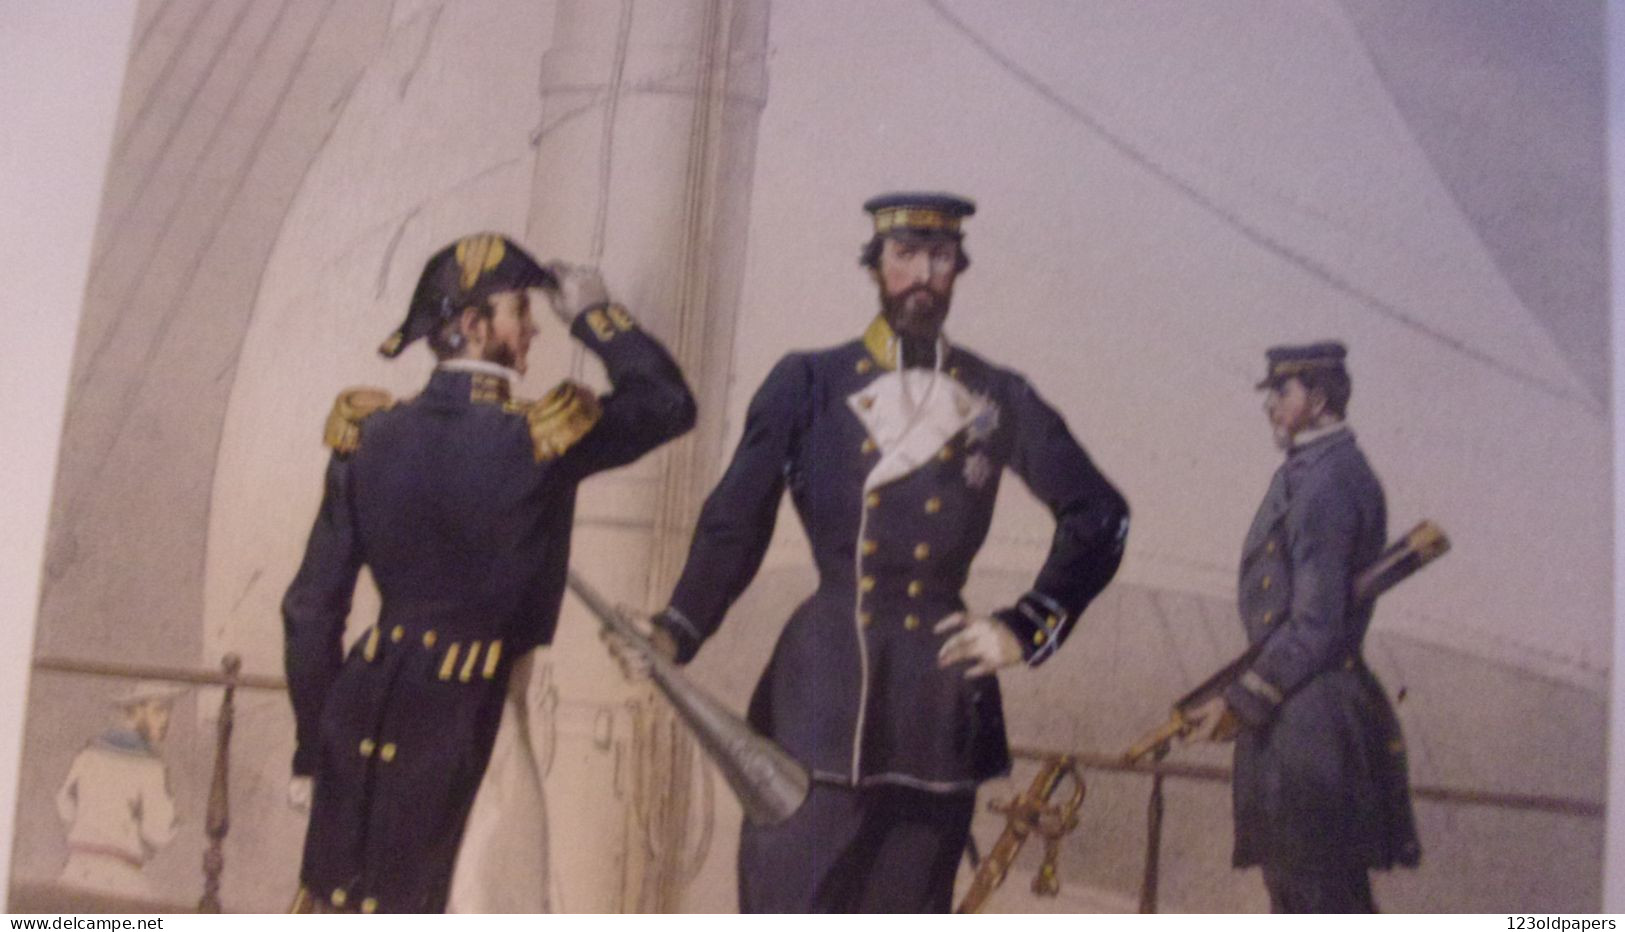 1861 Fritz von Dardel Uniformes Svenska och Norska Arméerna samt flottorna i deras nuvarande uniformering  6 GRAVURES CO